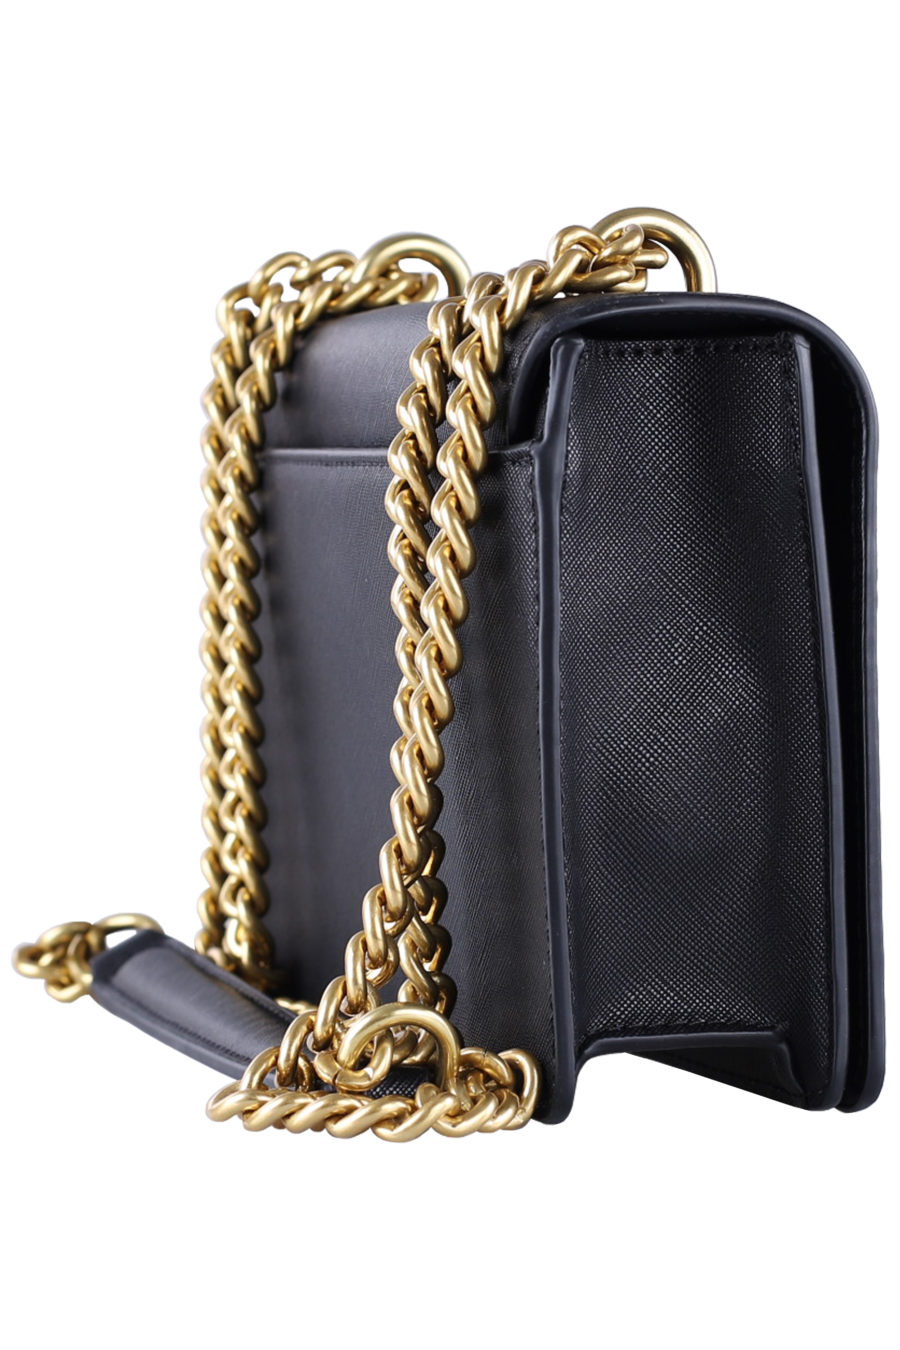 Black shoulder bag with gold logo - 21aef93e9517677a0dc8fcf32632750436954e8b